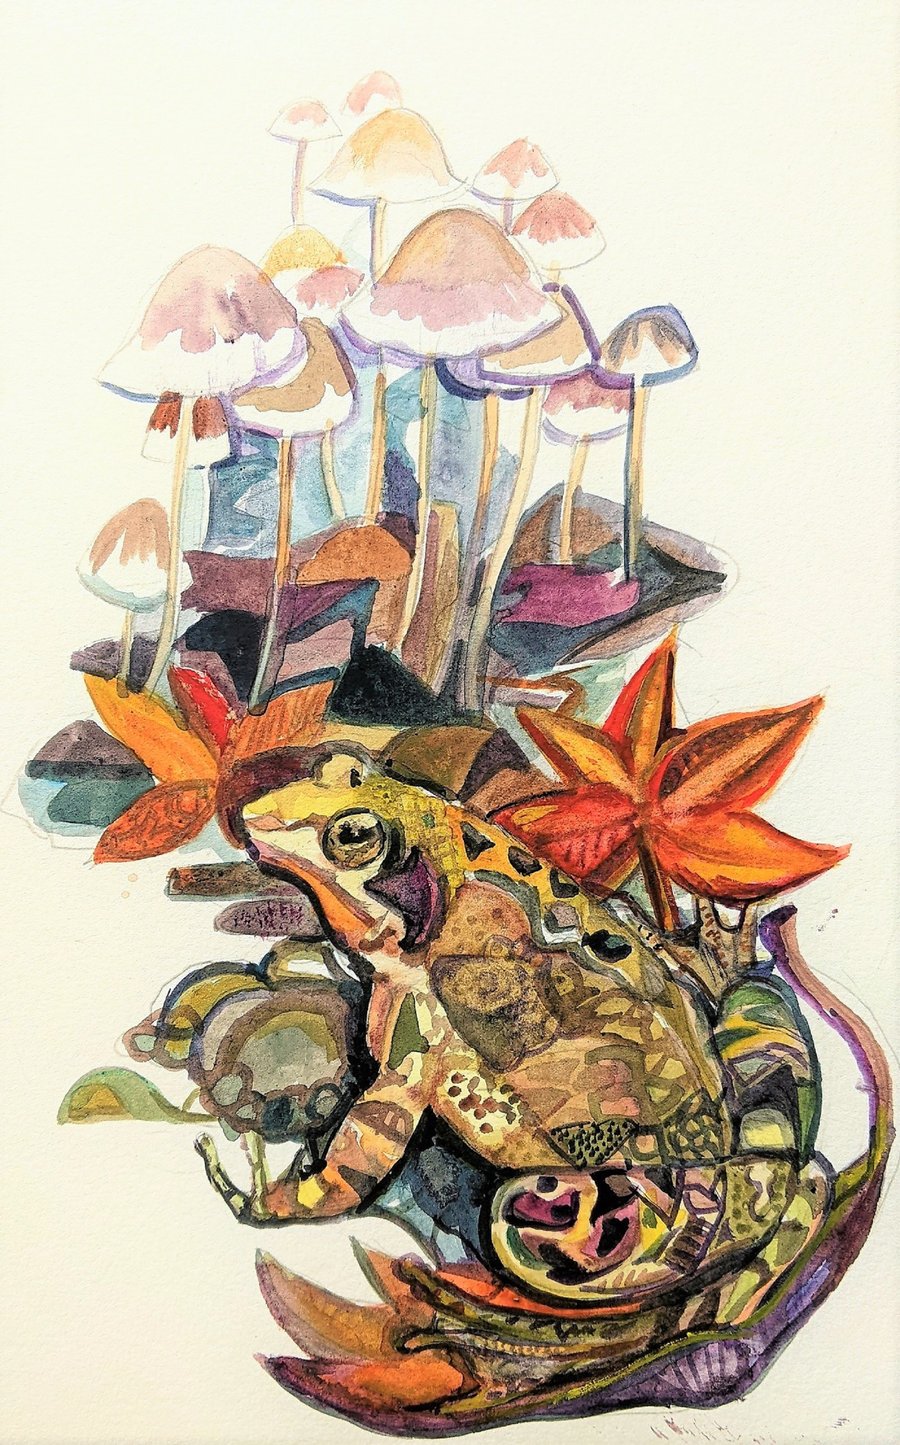 Frog Painting original watercolor autumn mushrooms